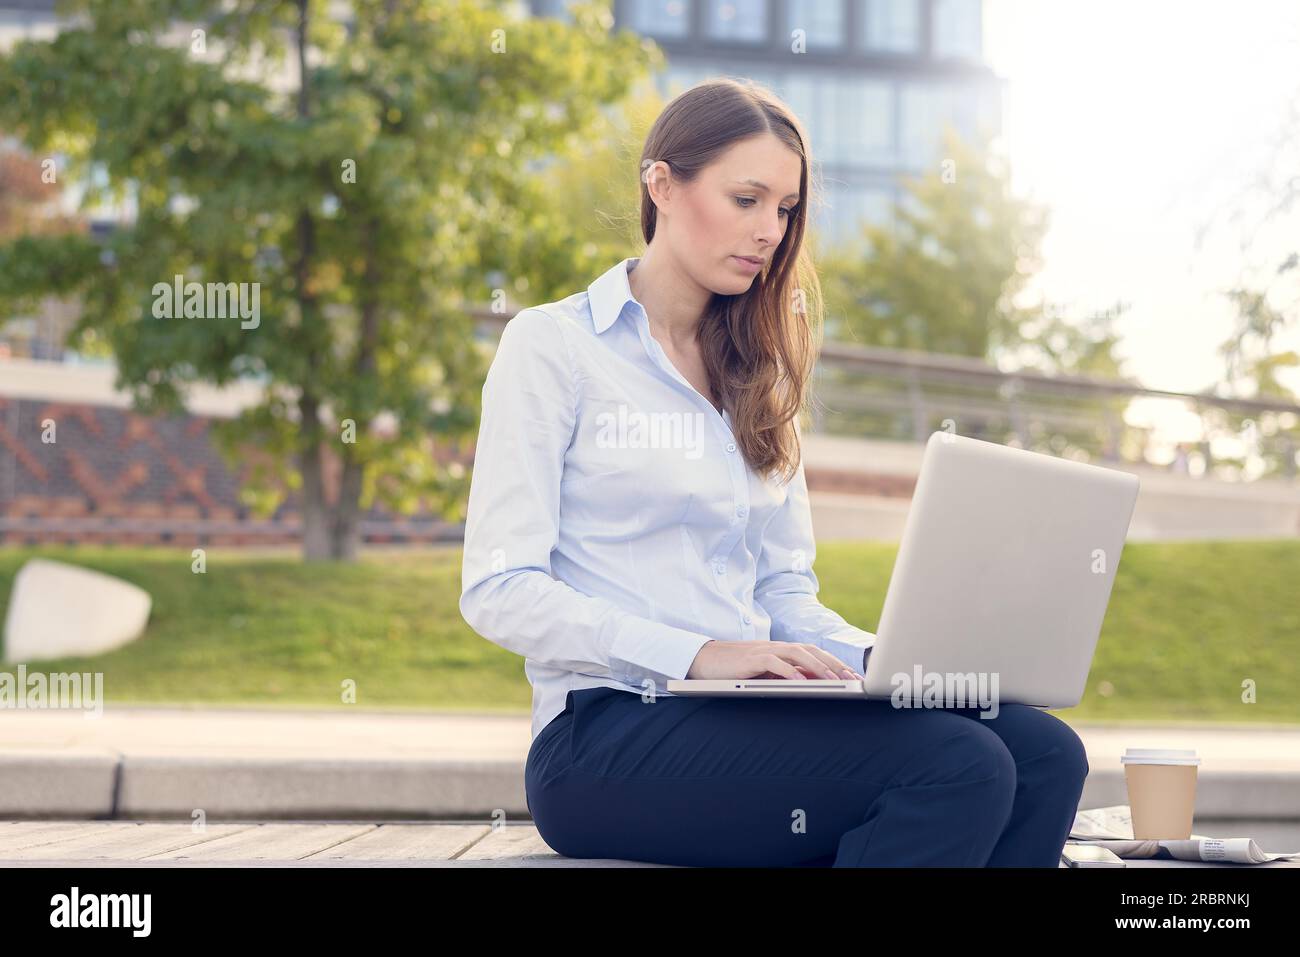 Attraktive junge Frau trägt formelle Kleidung während der Arbeit im Freien auf einem Laptop, mit einer drahtlosen Verbindung mit dem Internet, das in einer Schönen Tag des Sommers Stockfoto